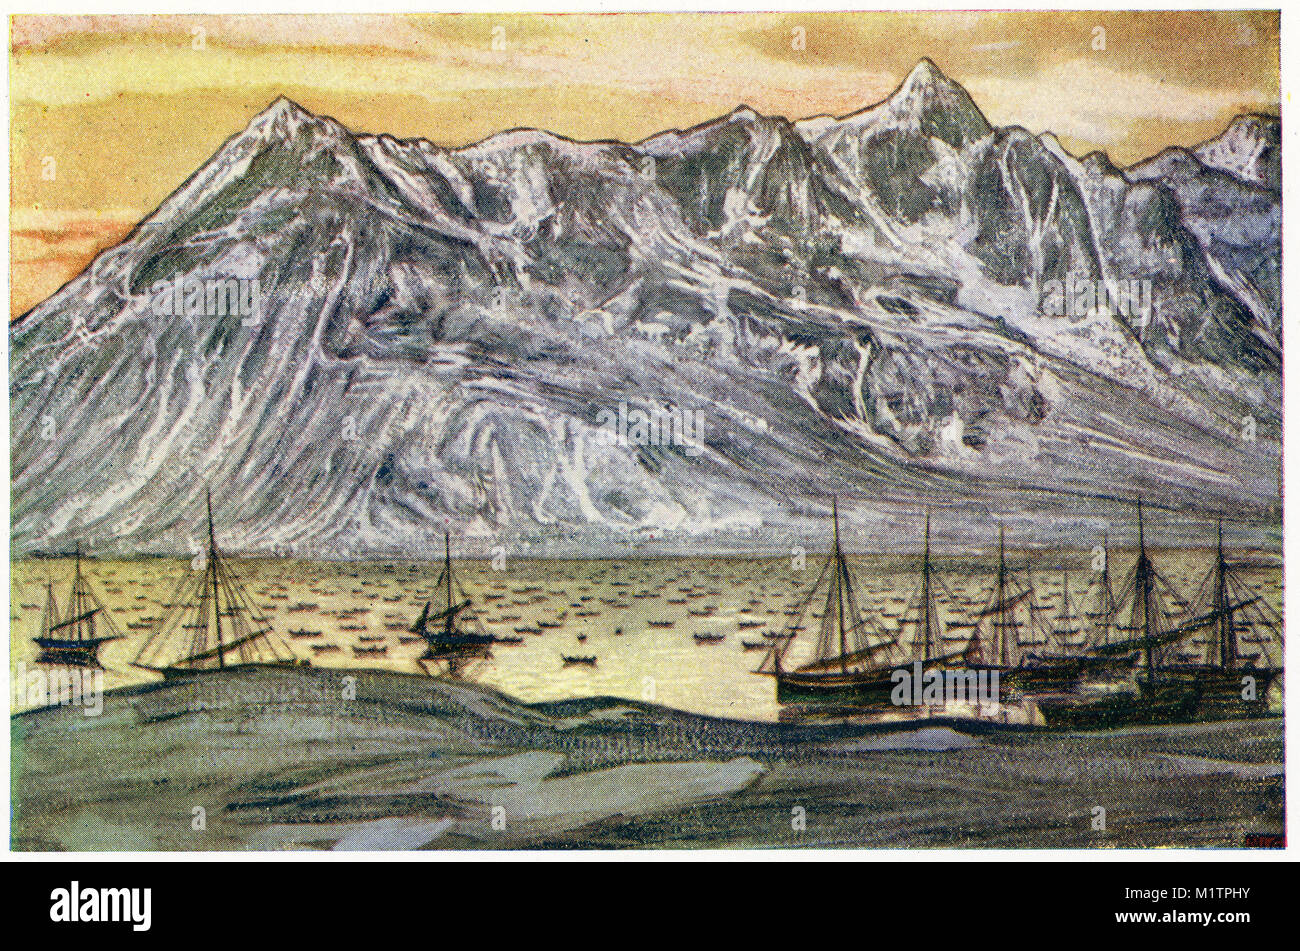 Ilustración de semitonos de la costa ártica y una flota de barcos pesqueros. Hogar de los esquimales, circa 1900. A partir de una imagen original en cómo otras personas viven por H. Clive Barnard, 1918. Foto de stock